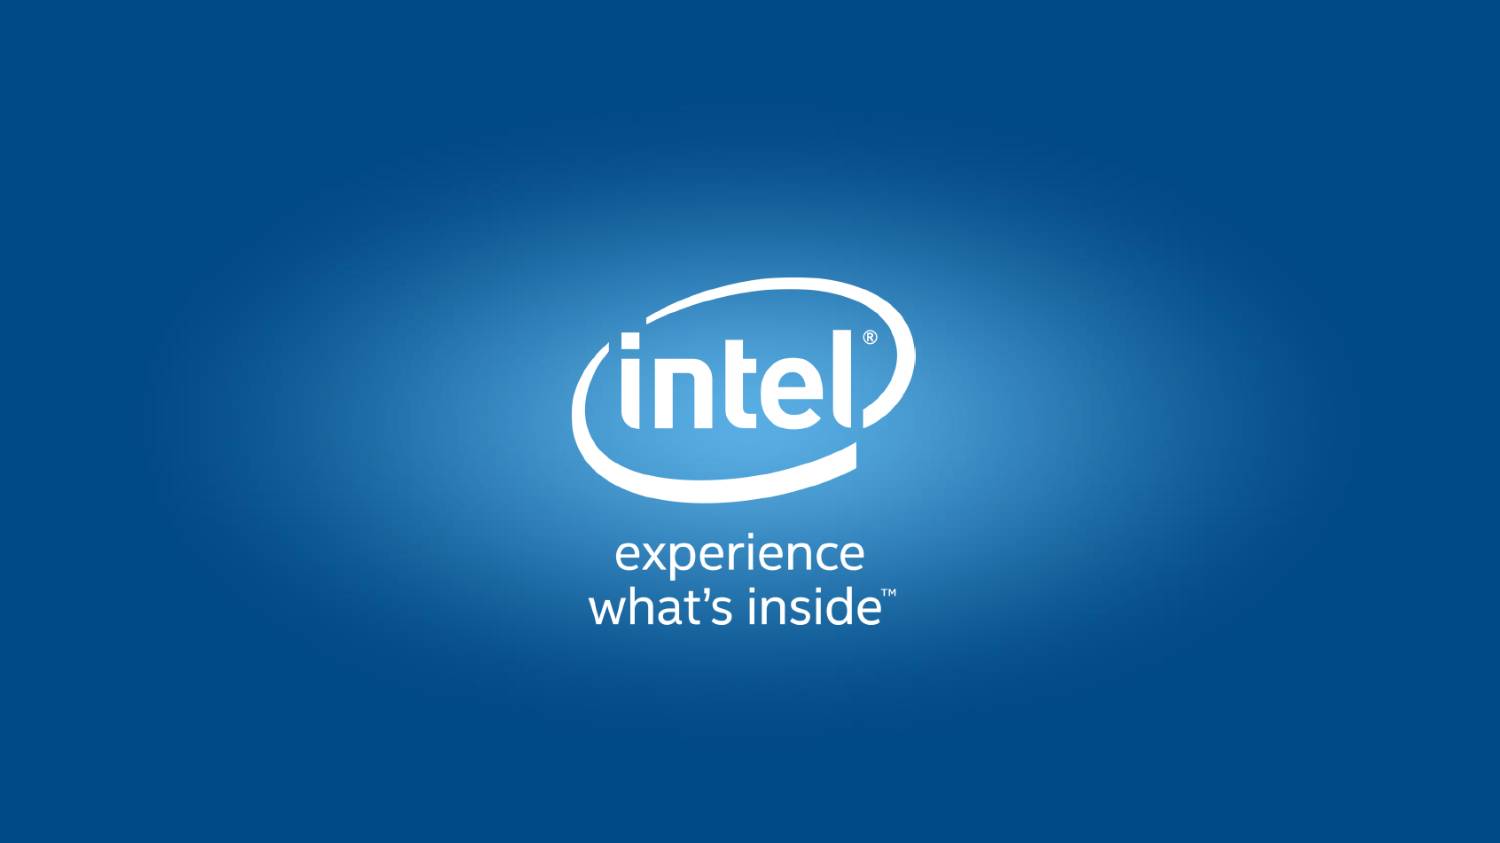 Интел. Логотип Интел. Заставка Интел. Картинки Intel. Intel fails